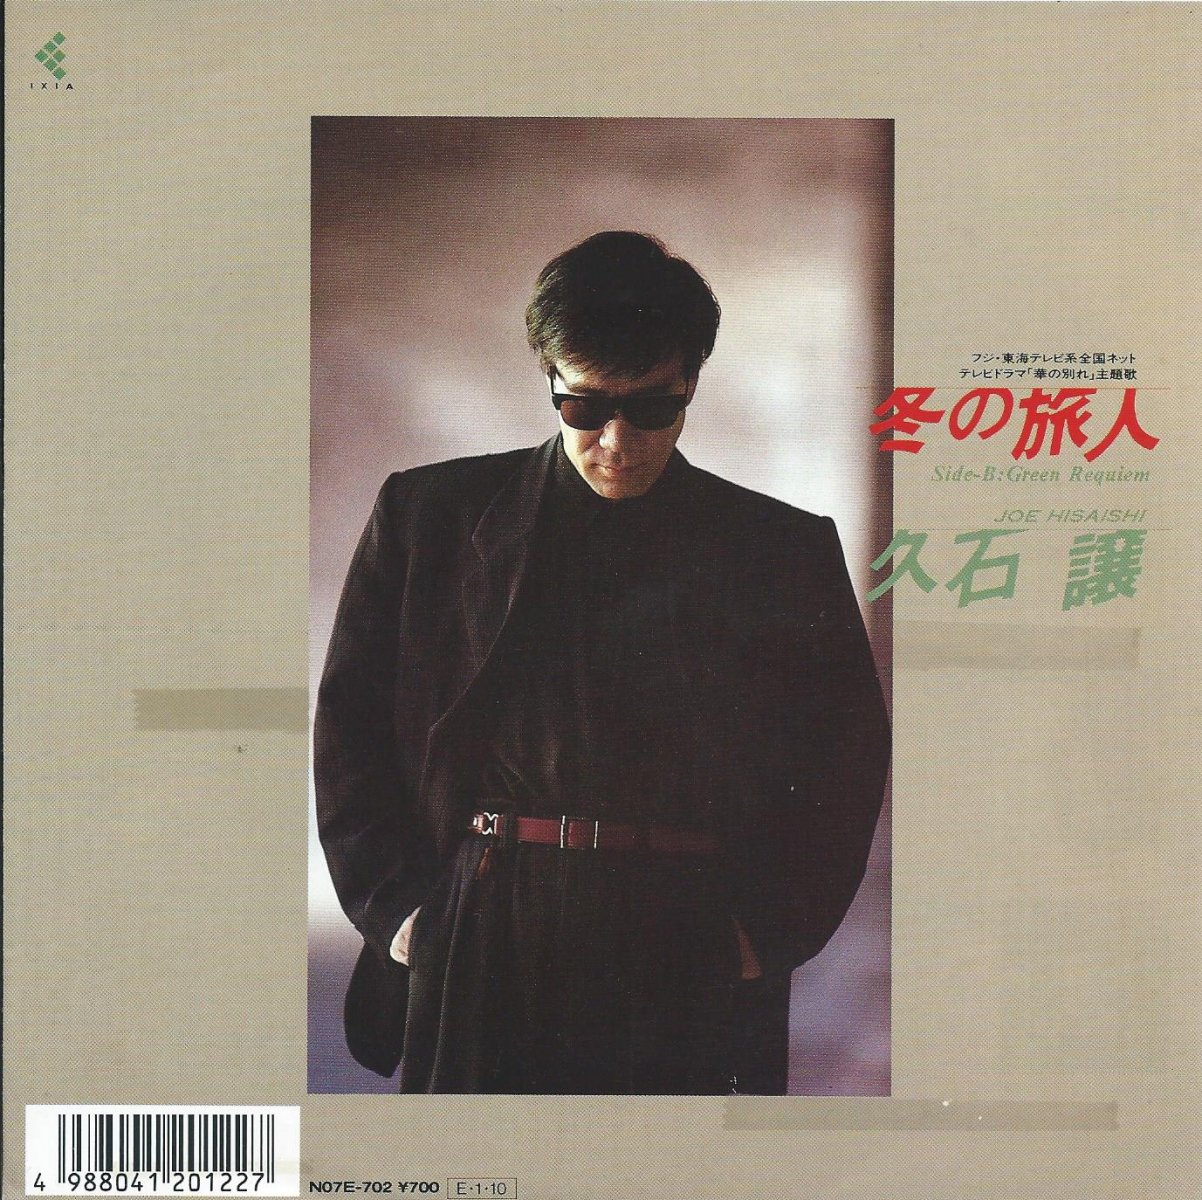 久石穣 Joe Hisaishi 冬の旅人 Green Requiem 7 Hip Tank Records